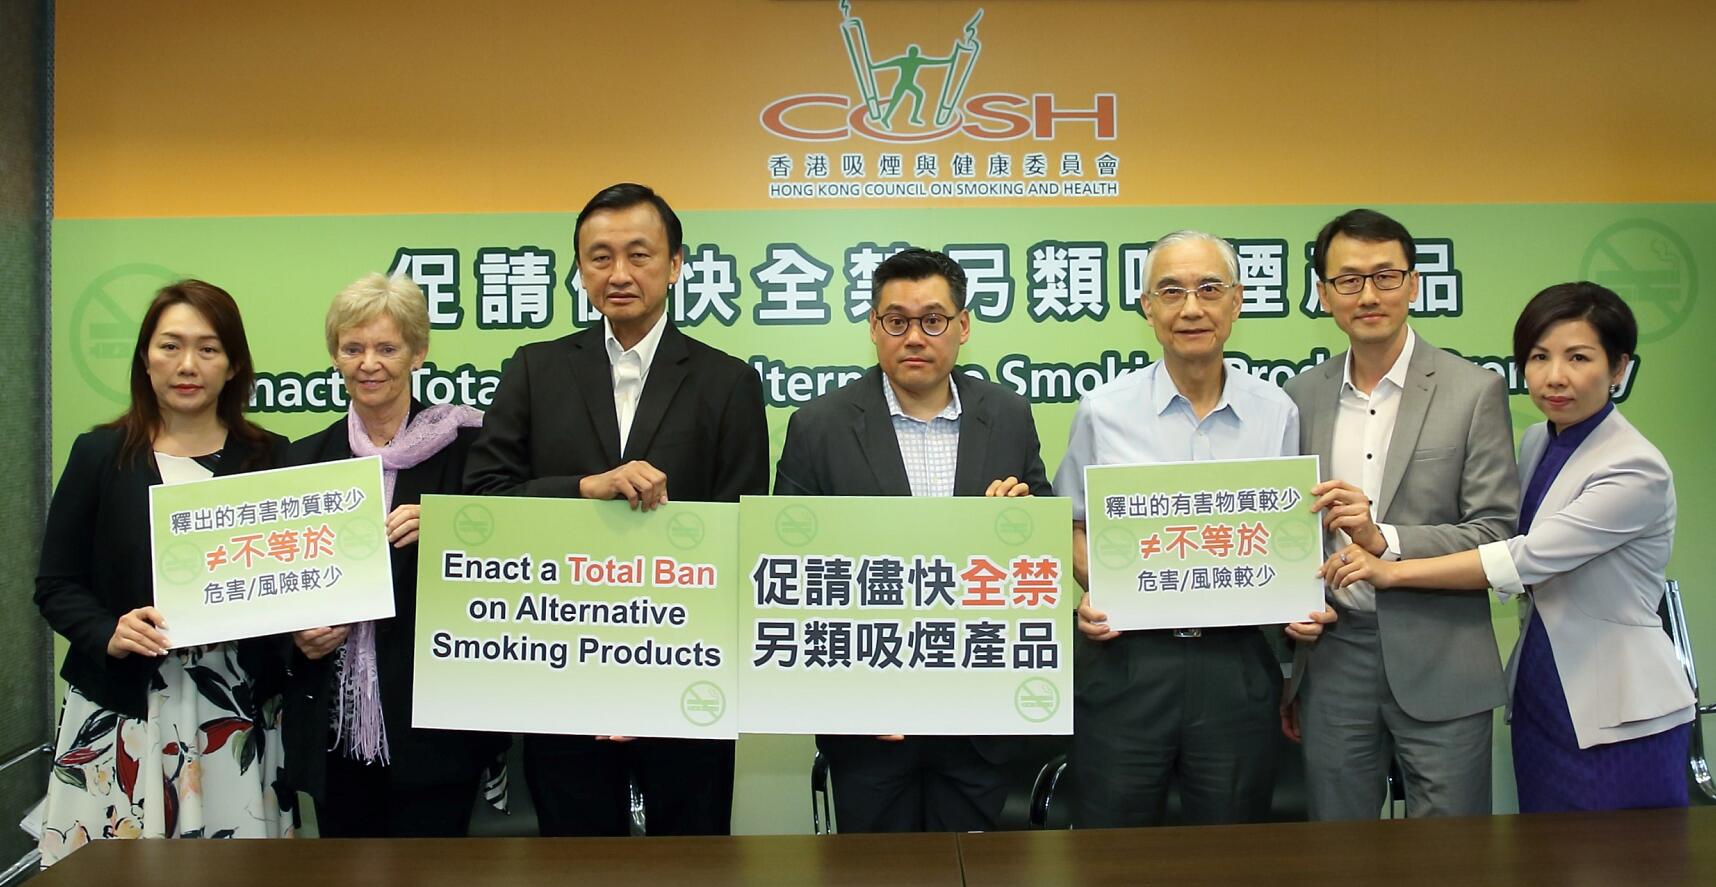 調查結果顯示A香港60%市民支持全面禁止電子煙和加熱煙A]香港吸煙與健康委員會官方網站圖^